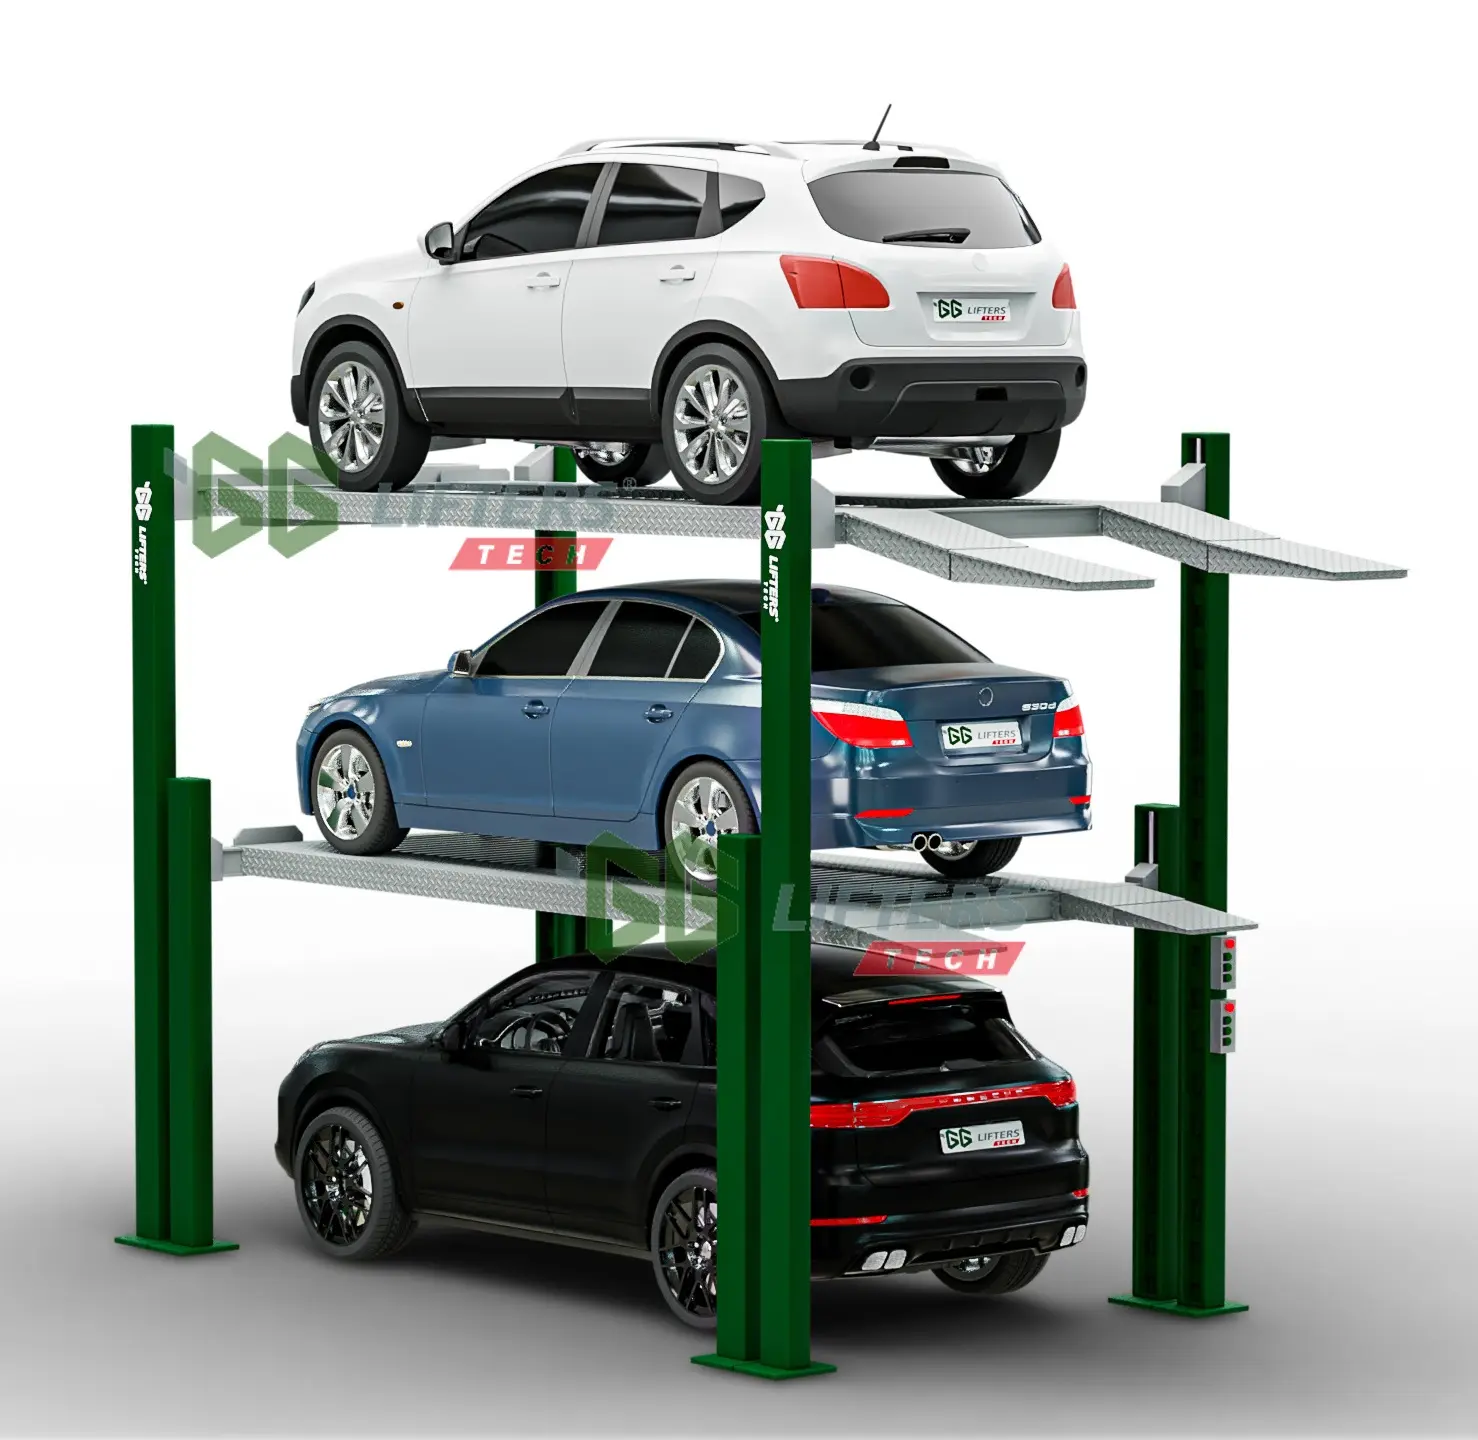 ट्रिपल स्तरों कार पार्किंग लिफ्ट हाइड्रोलिक सिलेंडर संचालित कार लिफ्ट वाहन 4 पोस्ट गेराज उपकरण